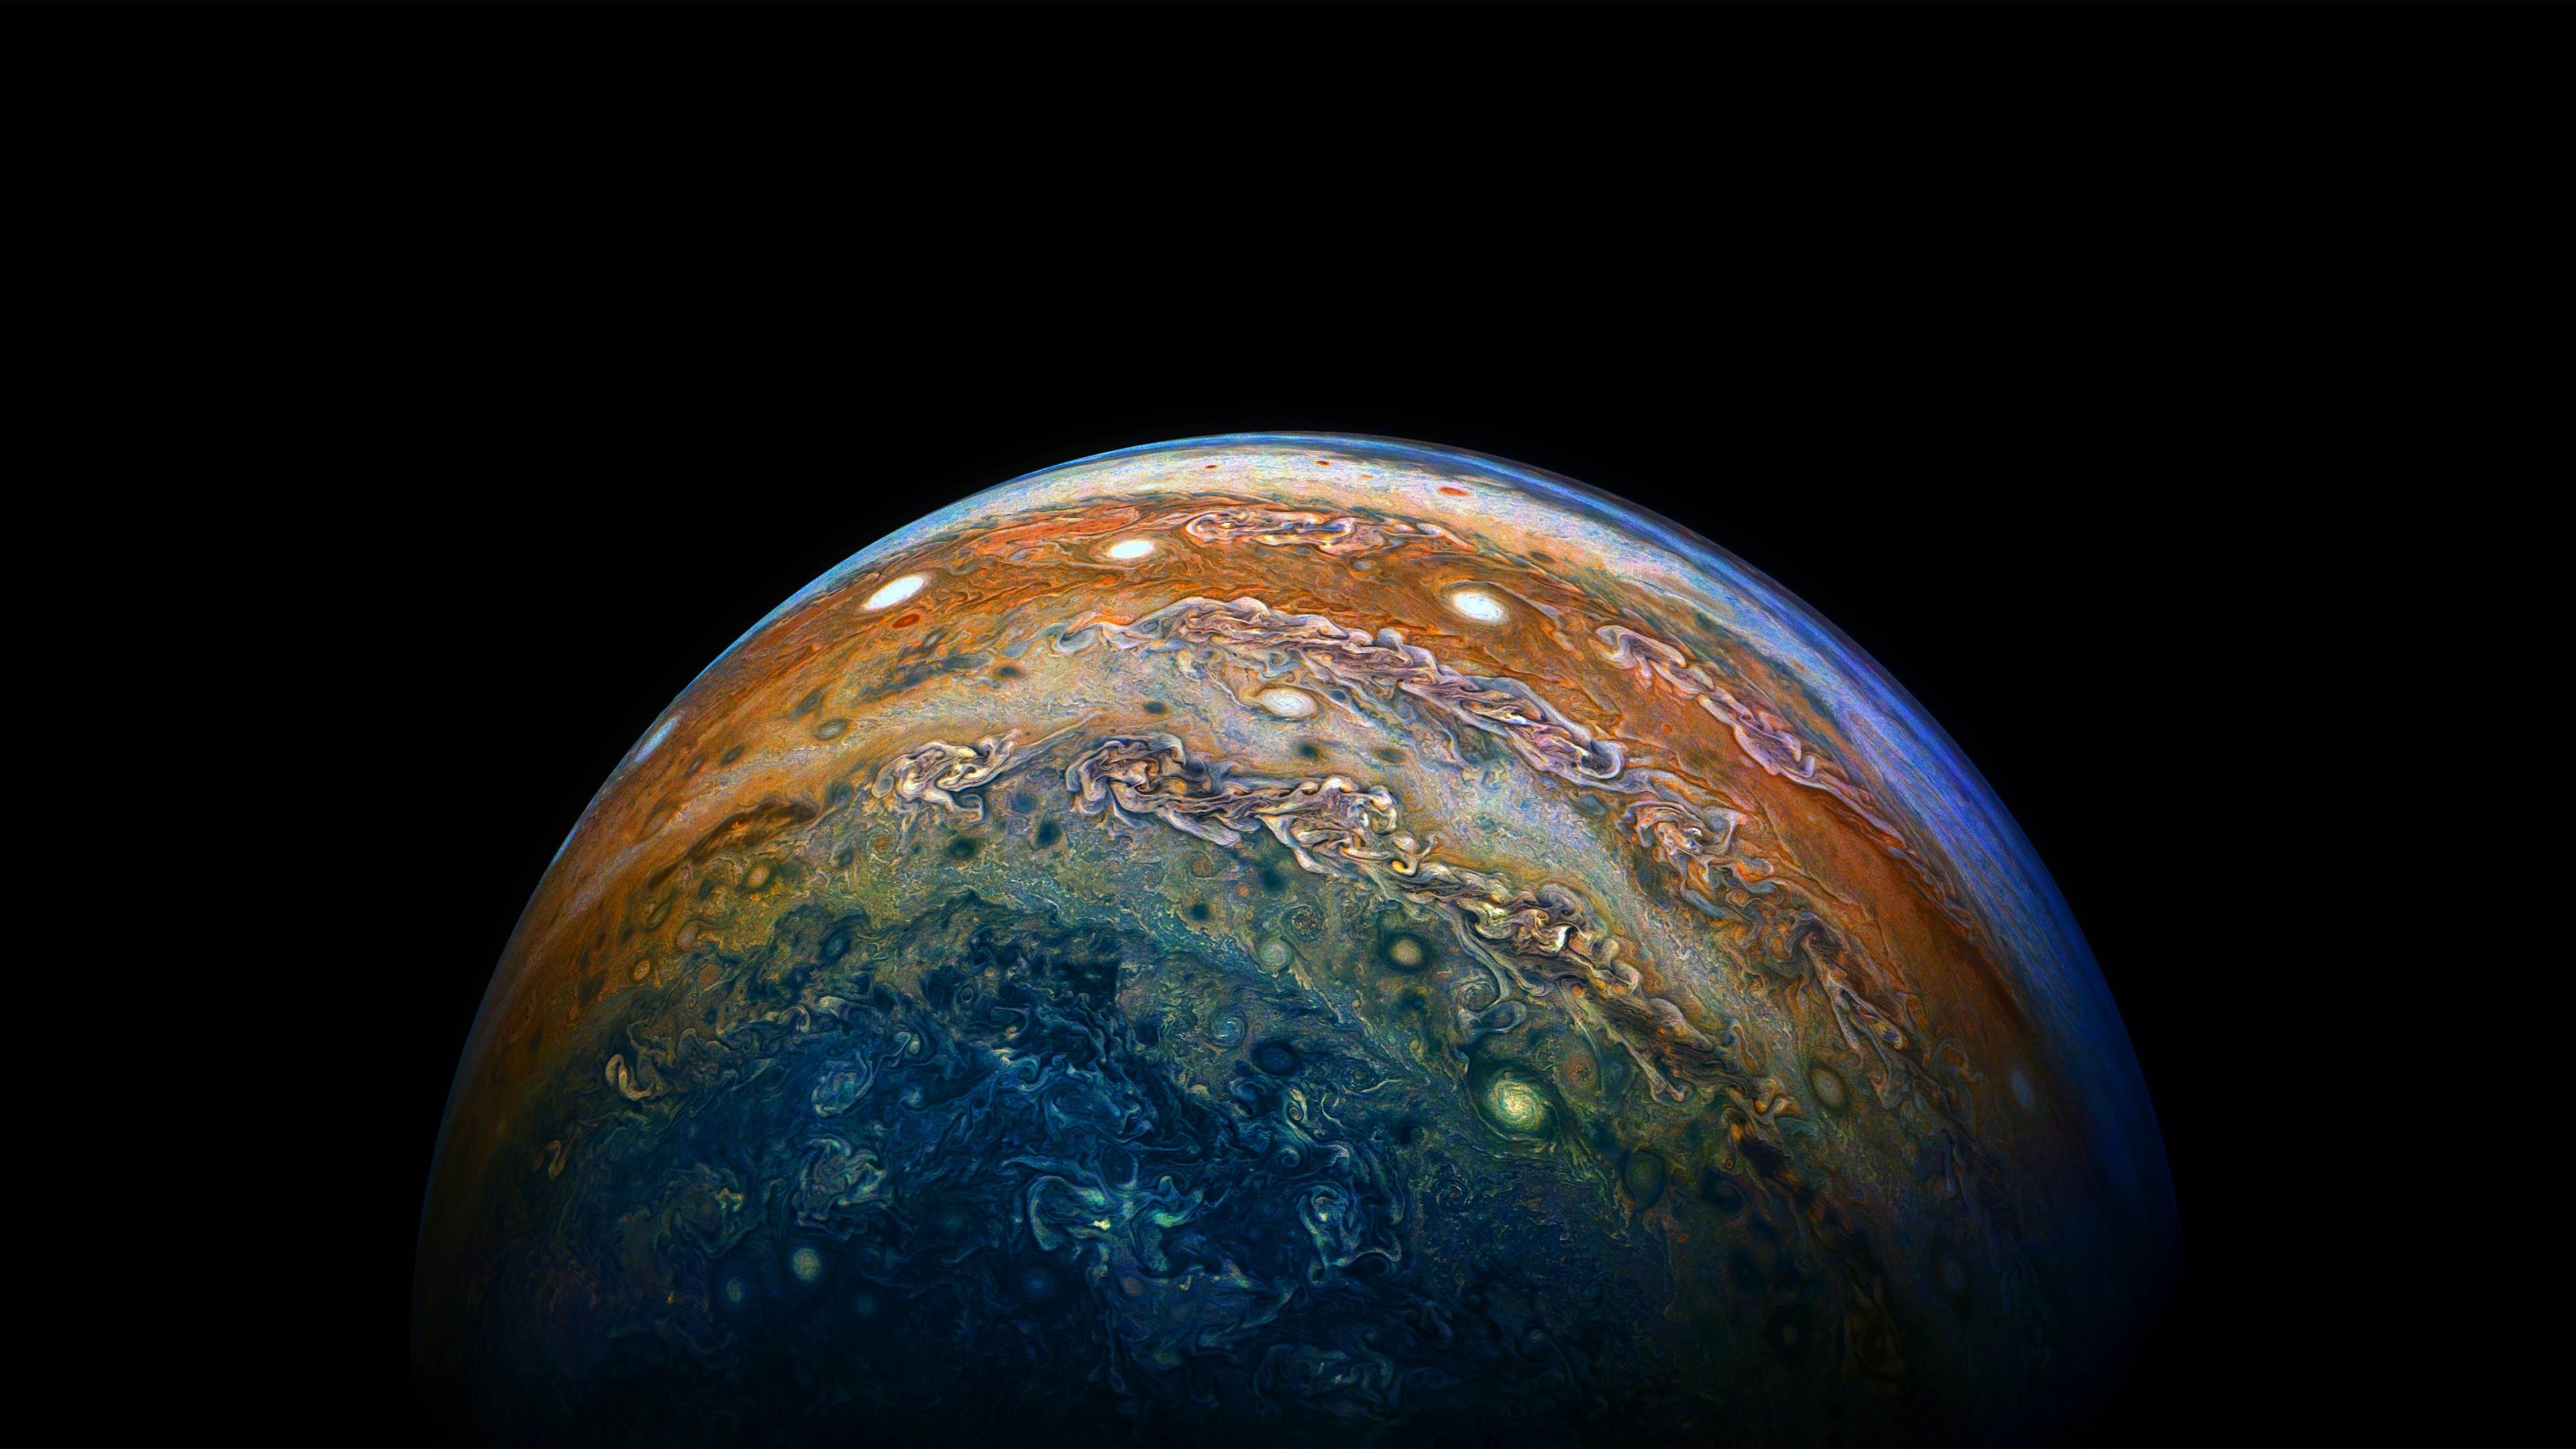 Jupiter Nasa Juno Mission 4k UltraHD Wallpaper